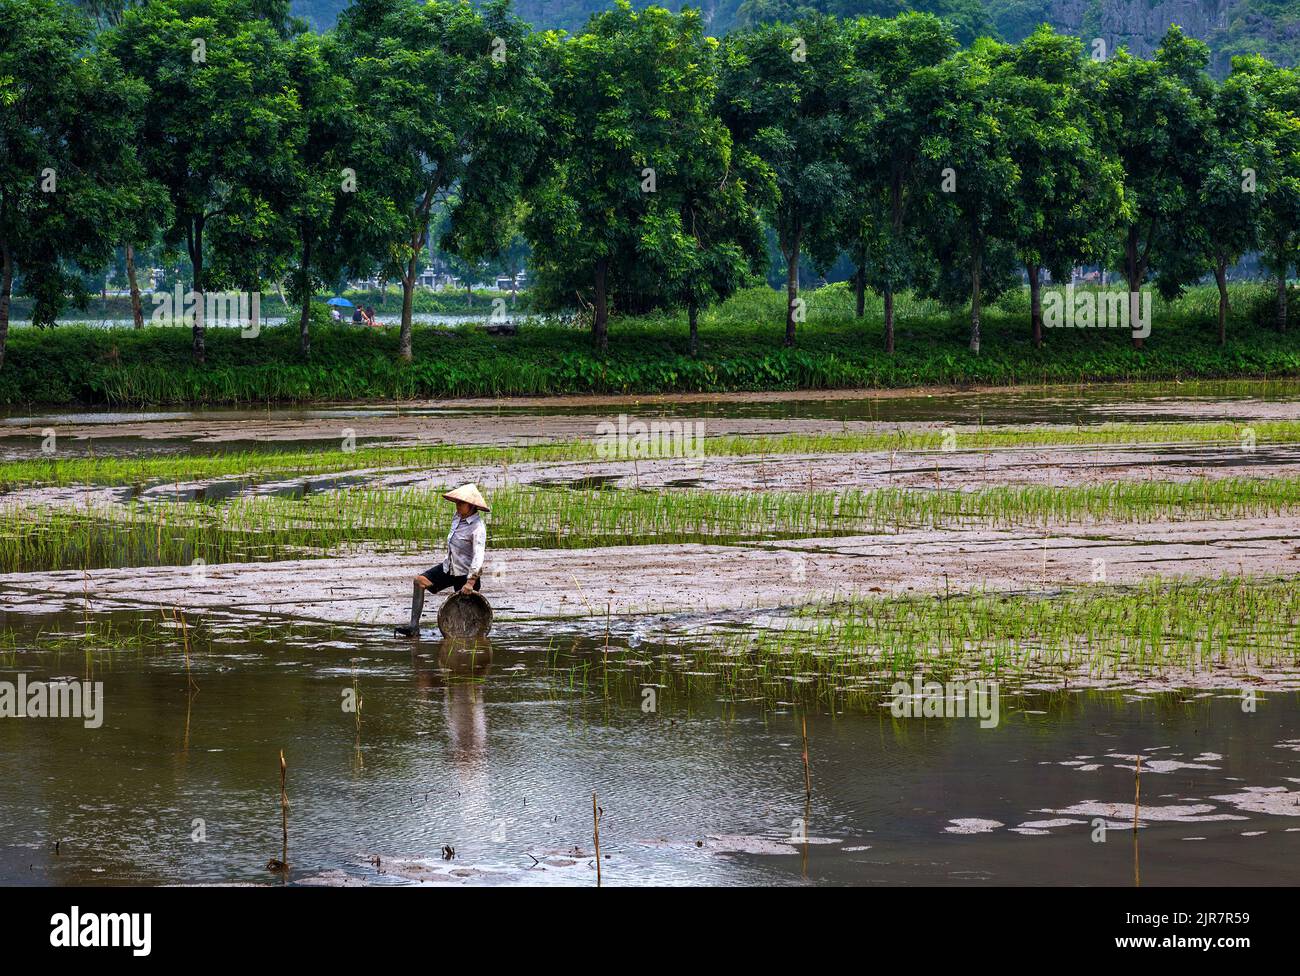 Eine große Baumreihe hilft diesem Reisbauer beim Reisanbau, indem sie den Wind blockiert, der den Boden wegblasen könnte. Stockfoto